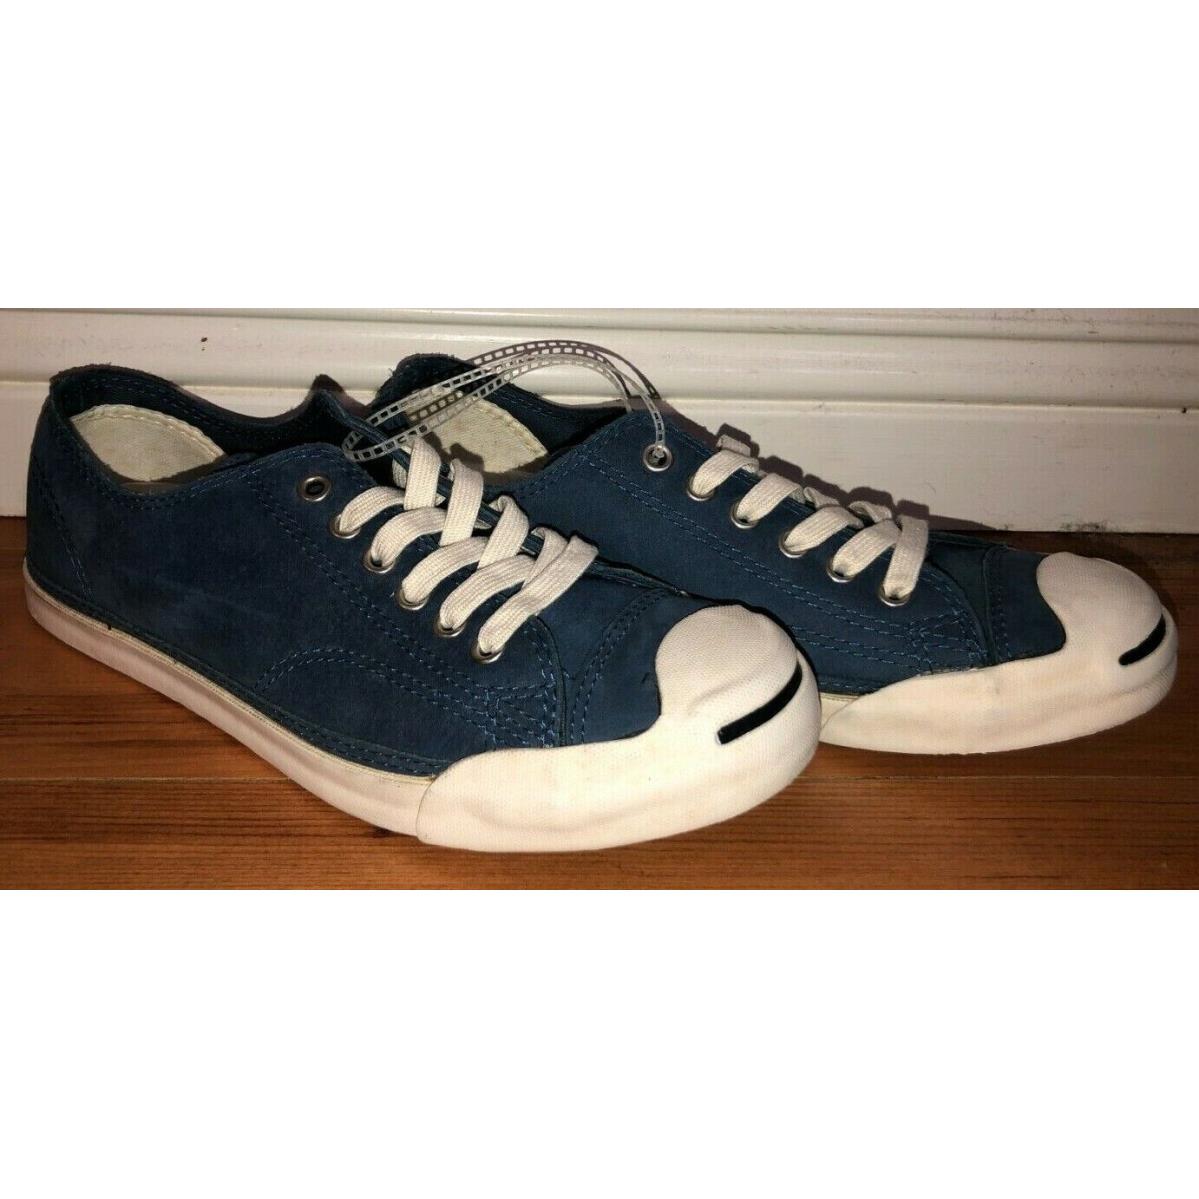 Converse Jack Purcell LP Ox Leather Vintage Shoes Blue White Mens Sz 6